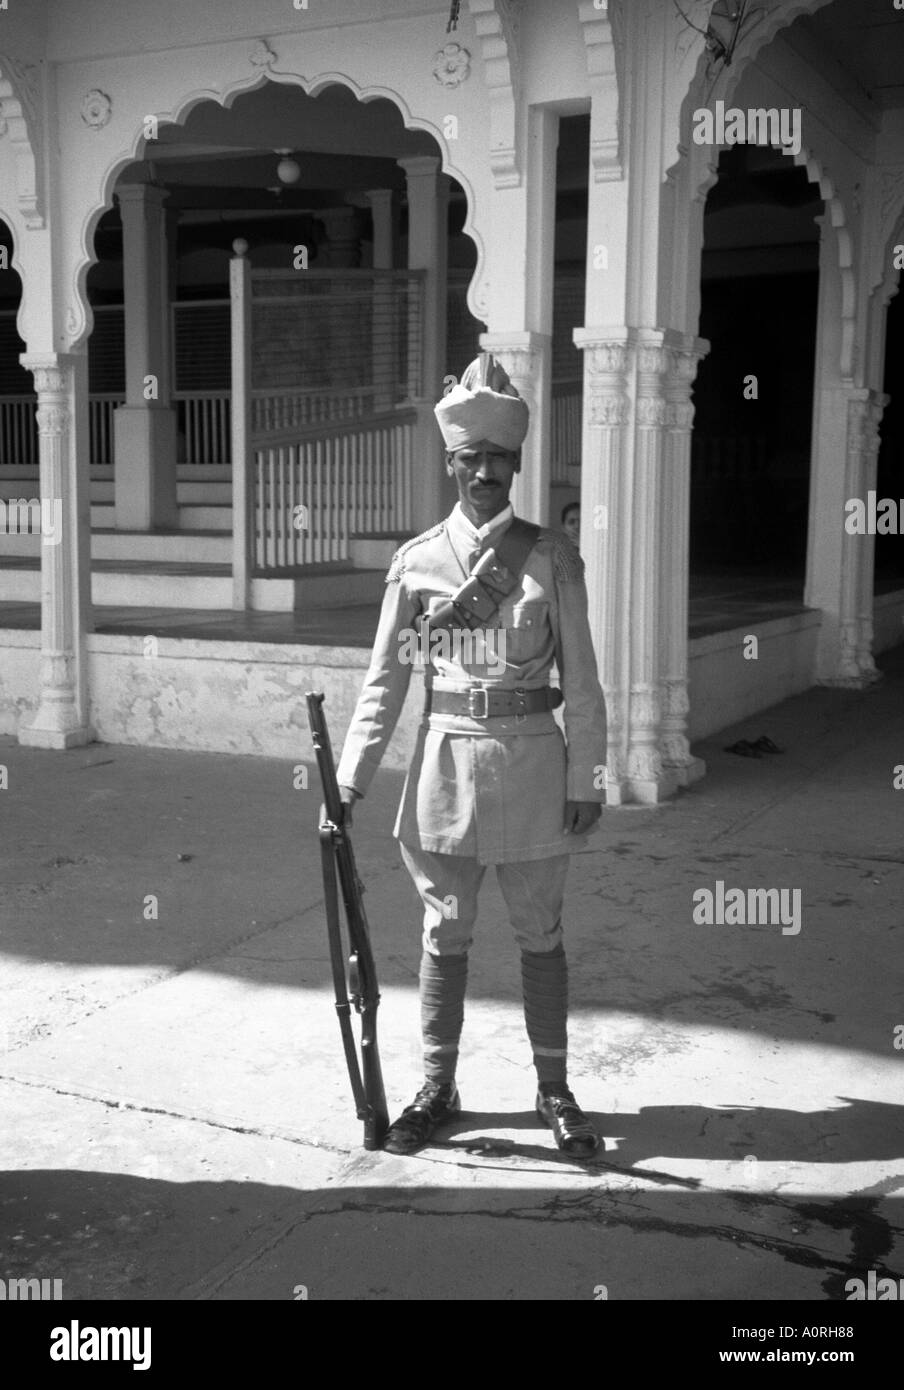 Hombre de pie vertical exterior plantean la tradición colonial de la calle de la guardia imperial rifle turbante hat Mysore Karnataka, India del sur de Asia Foto de stock